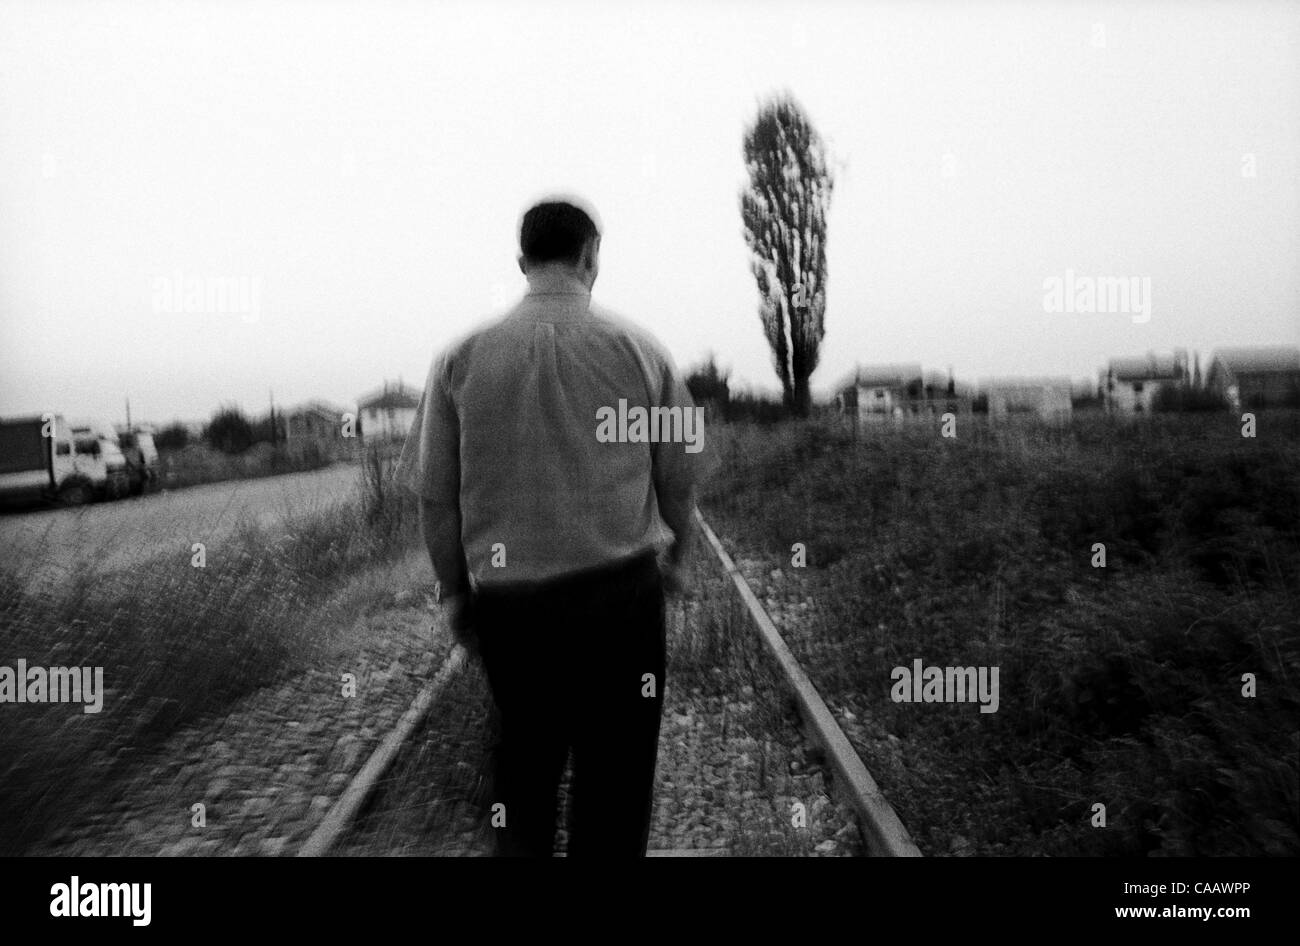 Eqrem Hoti paseos a lo largo de las vías del ferrocarril que corren a través de la aldea de Krushe e Mahde en Kosovo, donde más de cincuenta hombres fueron masacrados por paramilitares serbios en 1999. Foto de stock